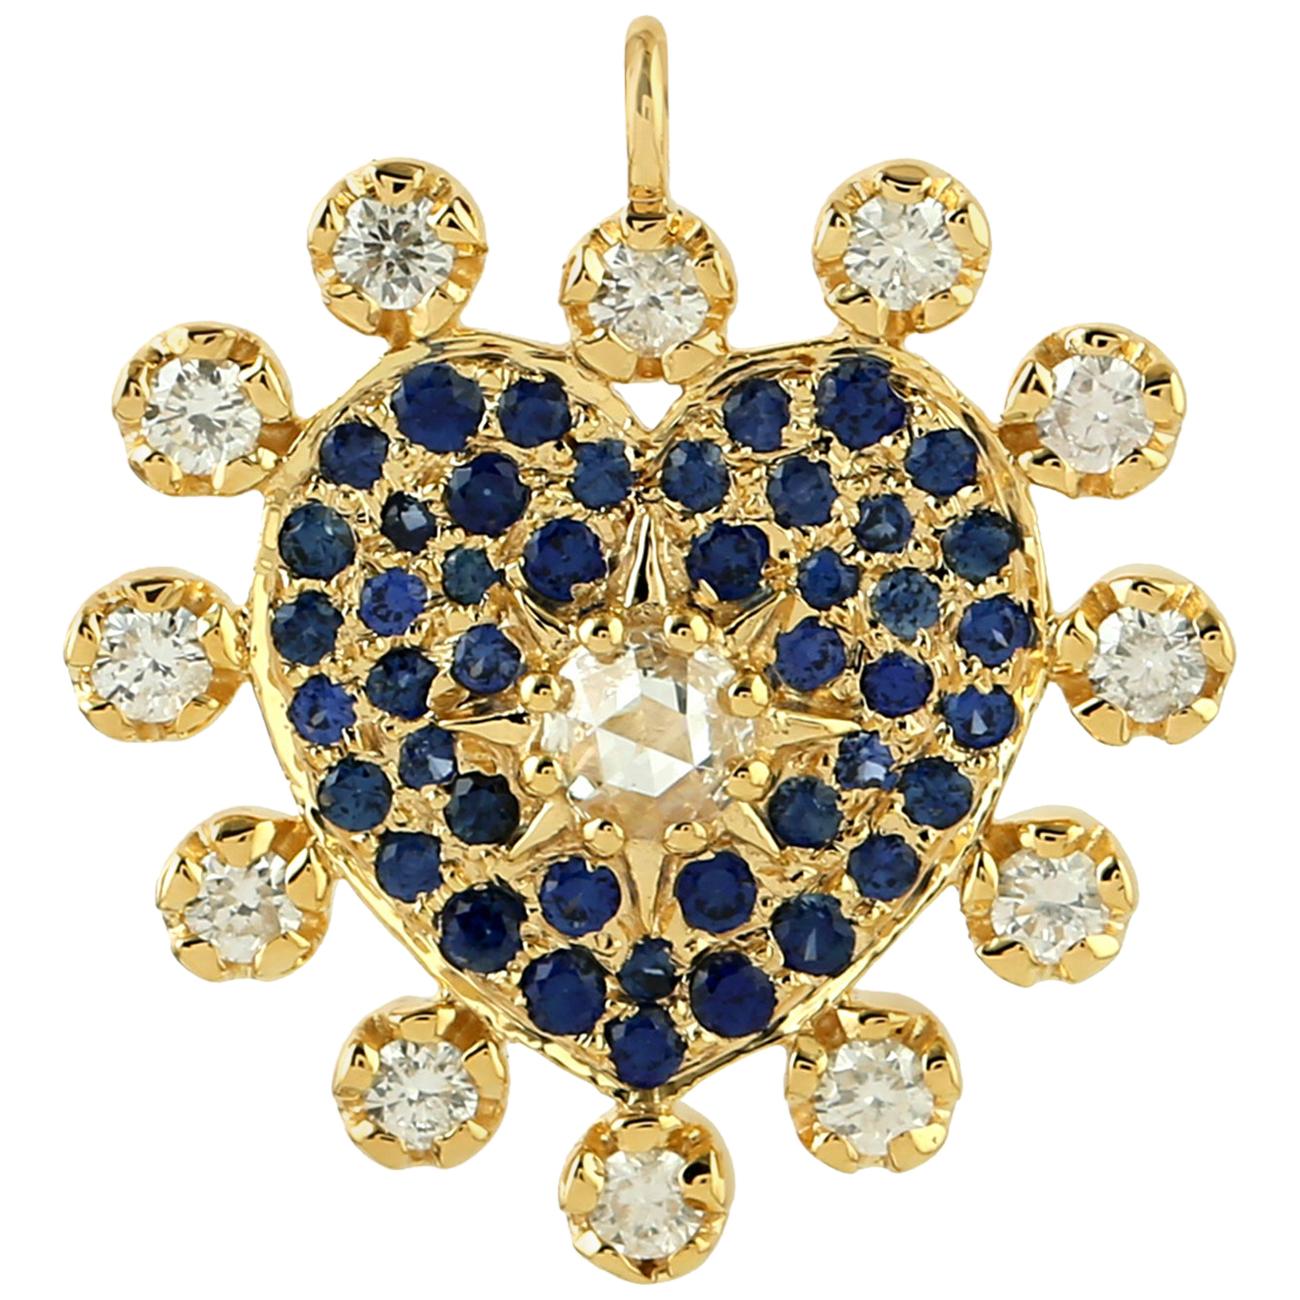 Collier pendentif à breloque cœur en or 18 carats avec diamants et saphirs bleus